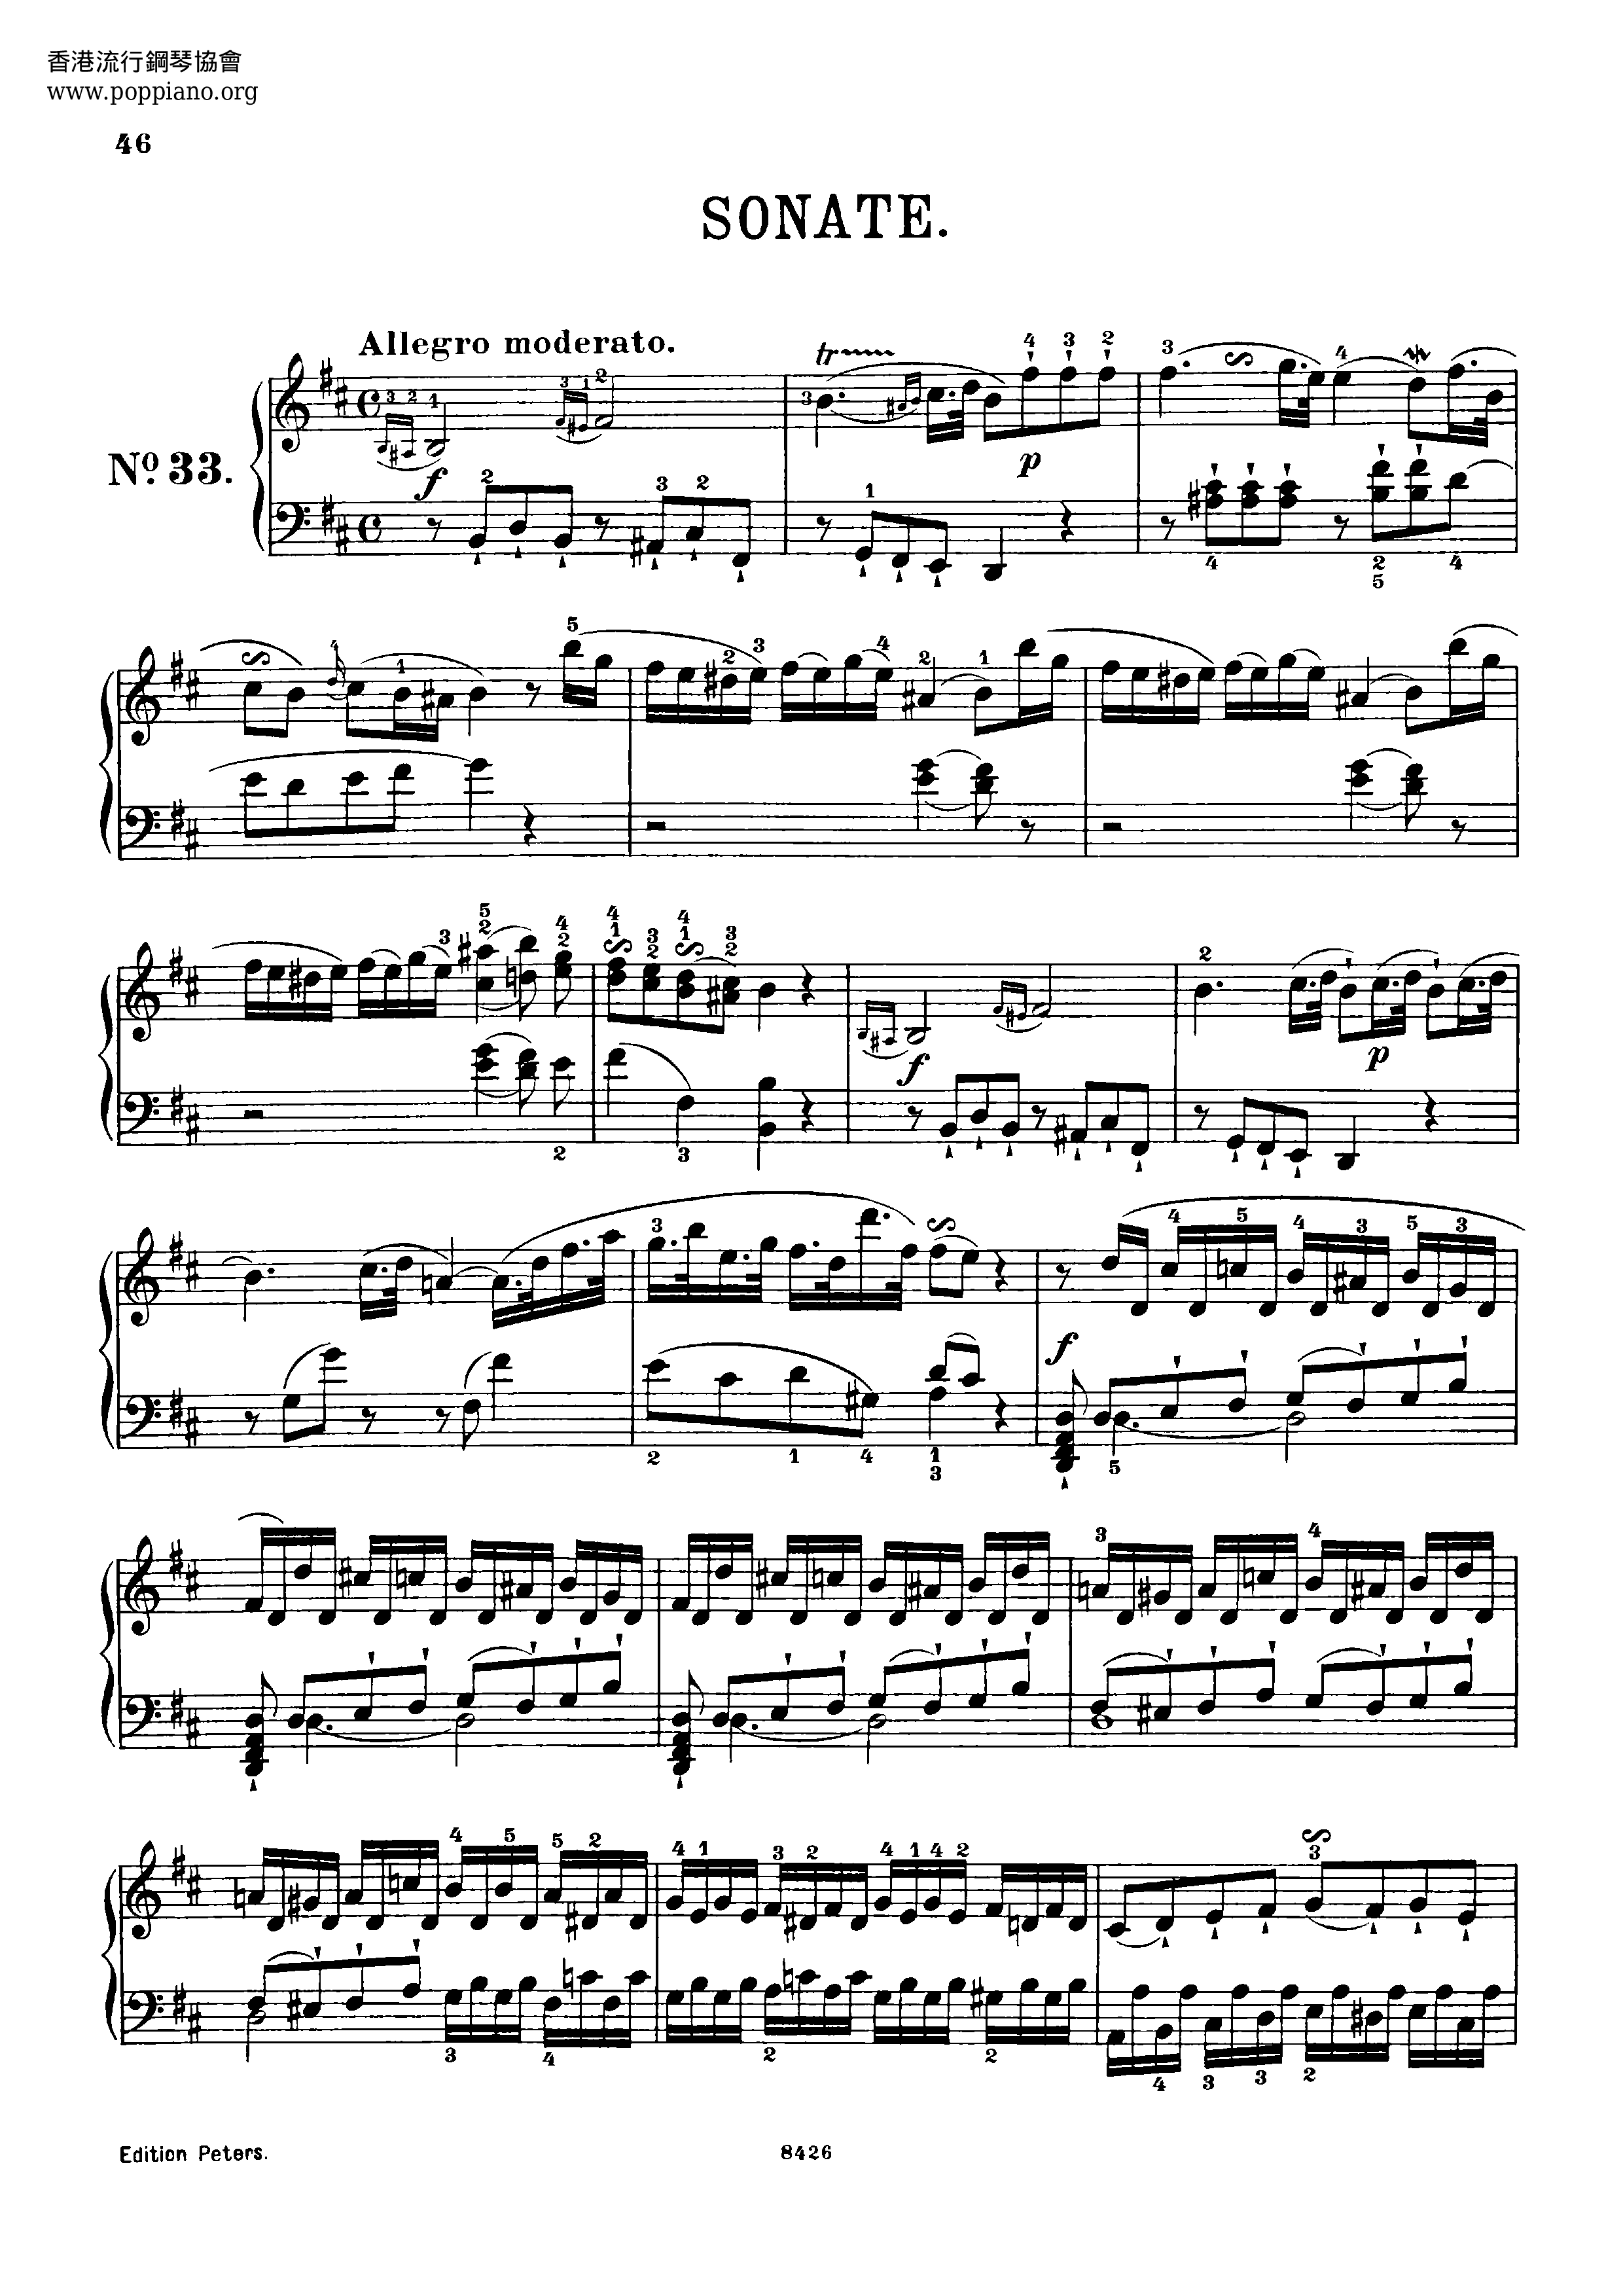 Piano Sonata in B Minor, No.47, Hob.XVI/32 Score